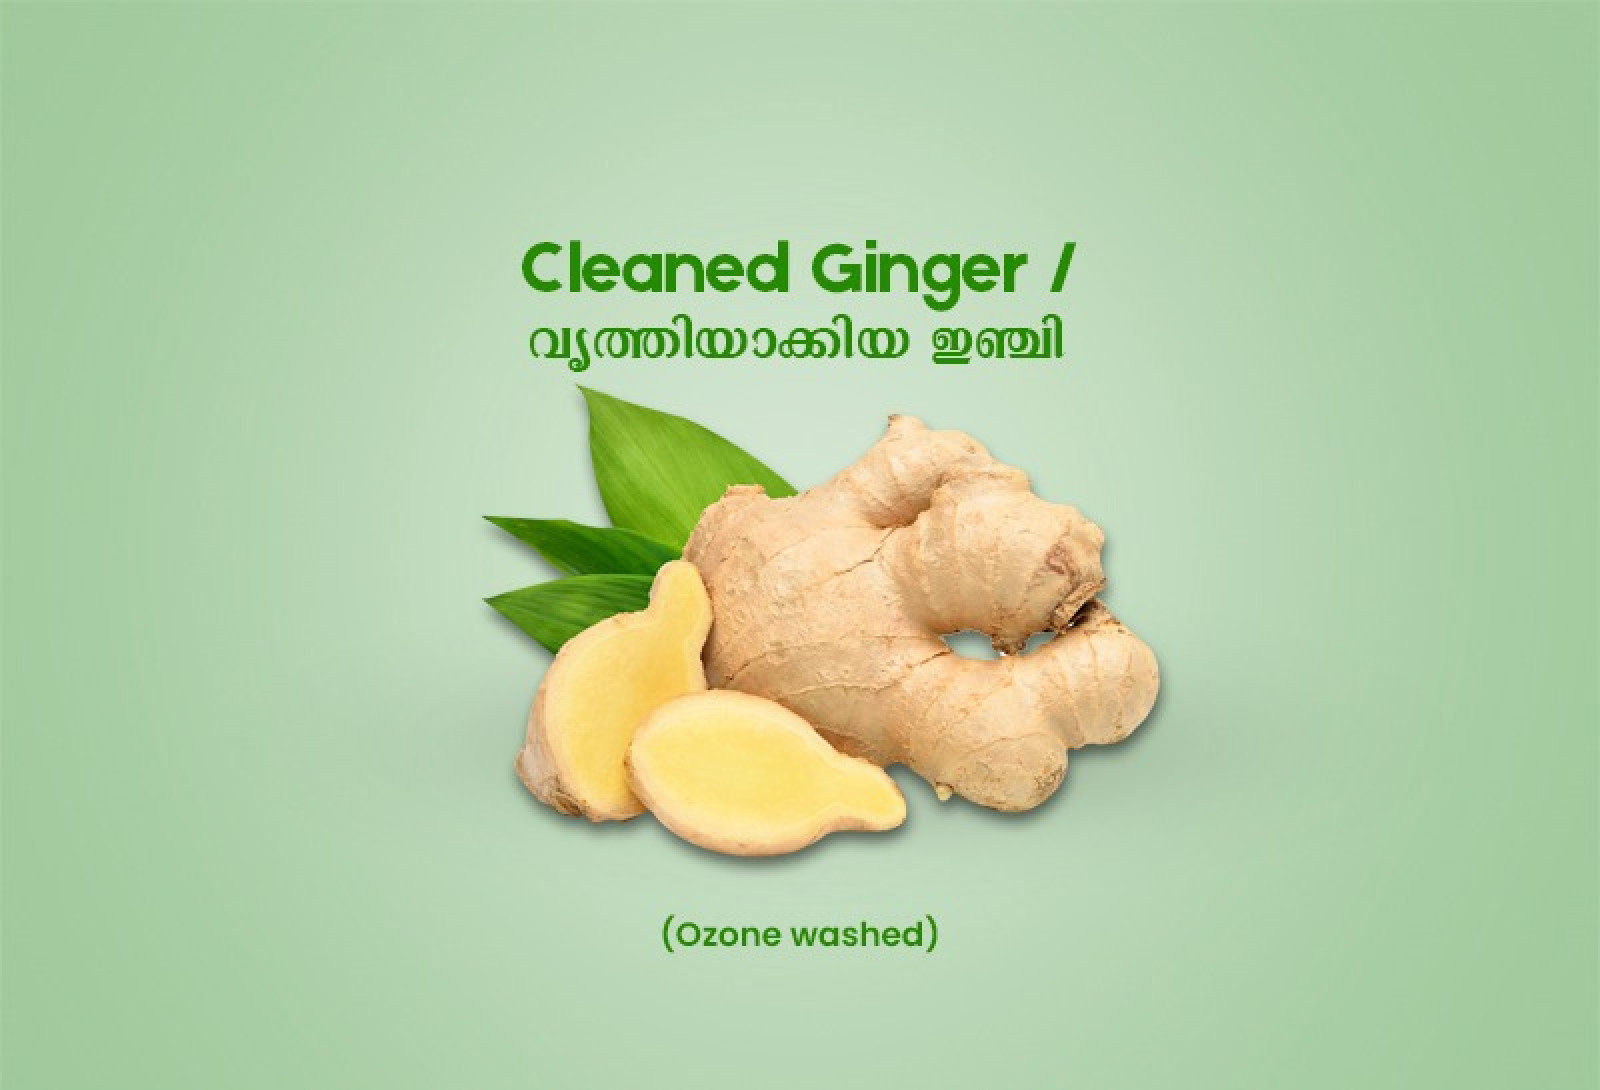 Cleaned Ginger / വൃത്തിയാക്കിയ ഇഞ്ചി  -250gm Pack ( Ozone Washed)